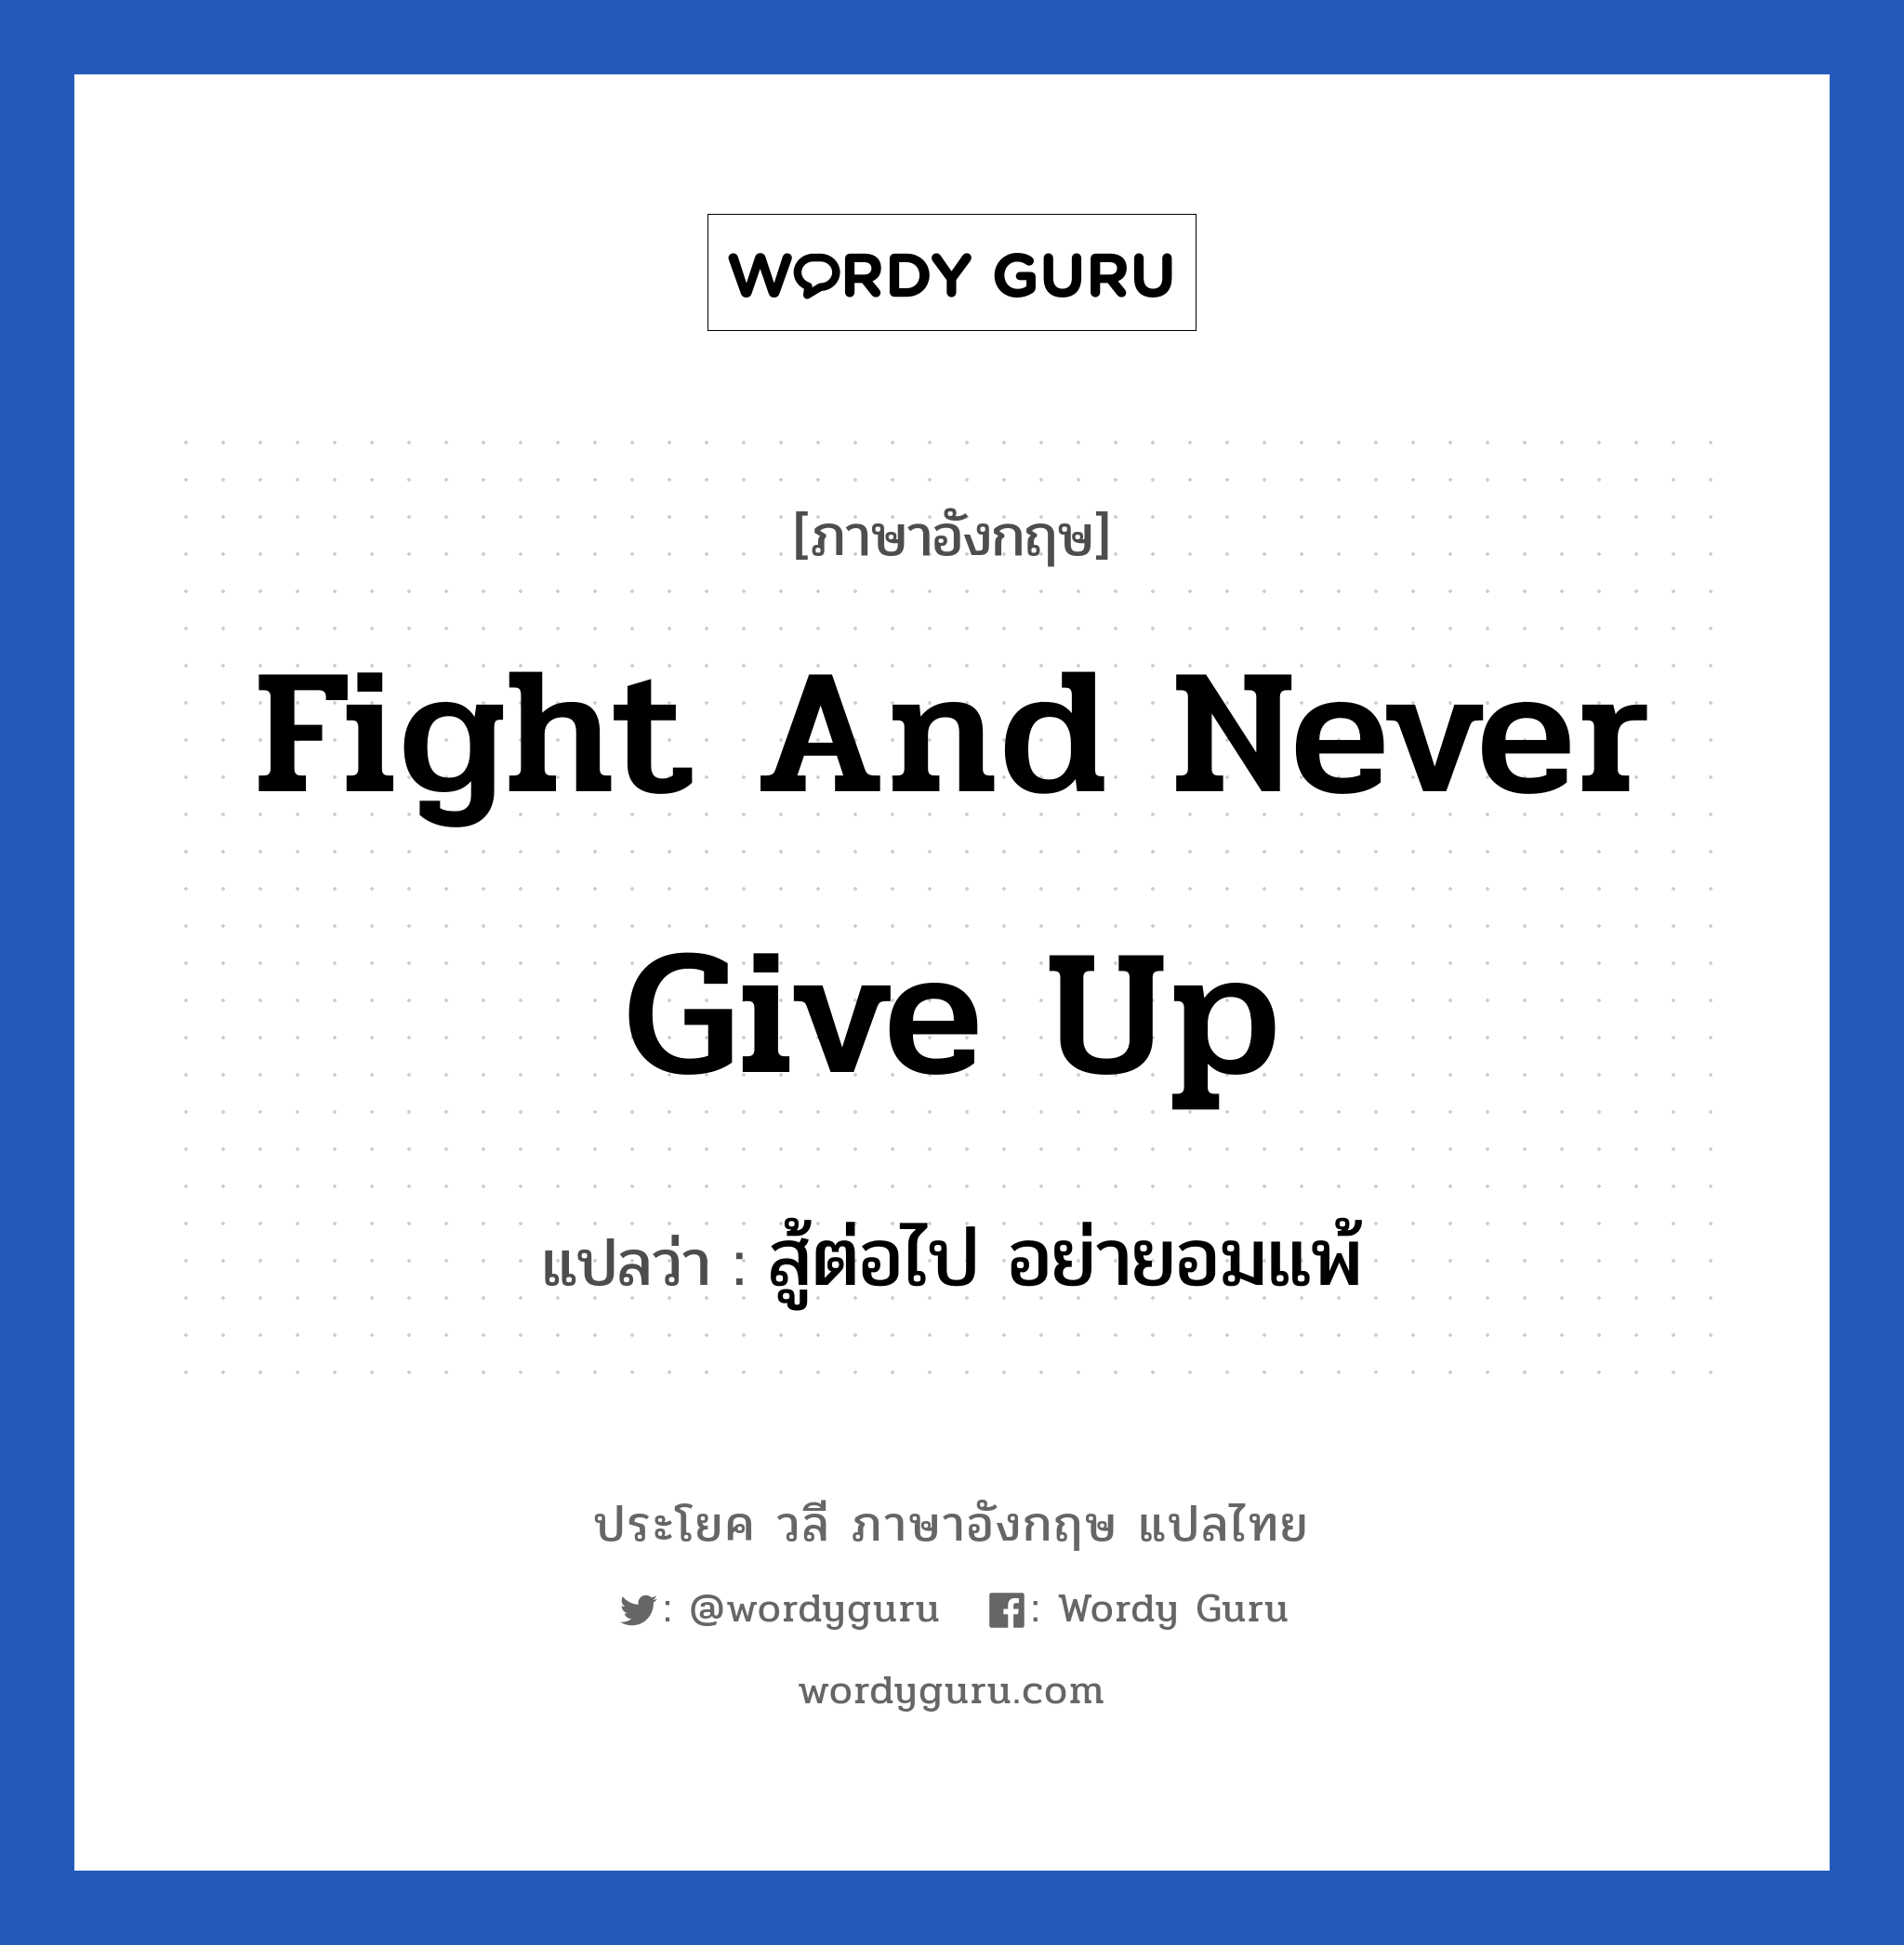 สู้ต่อไป อย่ายอมแพ้ ภาษาอังกฤษ?, วลีภาษาอังกฤษ สู้ต่อไป อย่ายอมแพ้ แปลว่า Fight and never give up